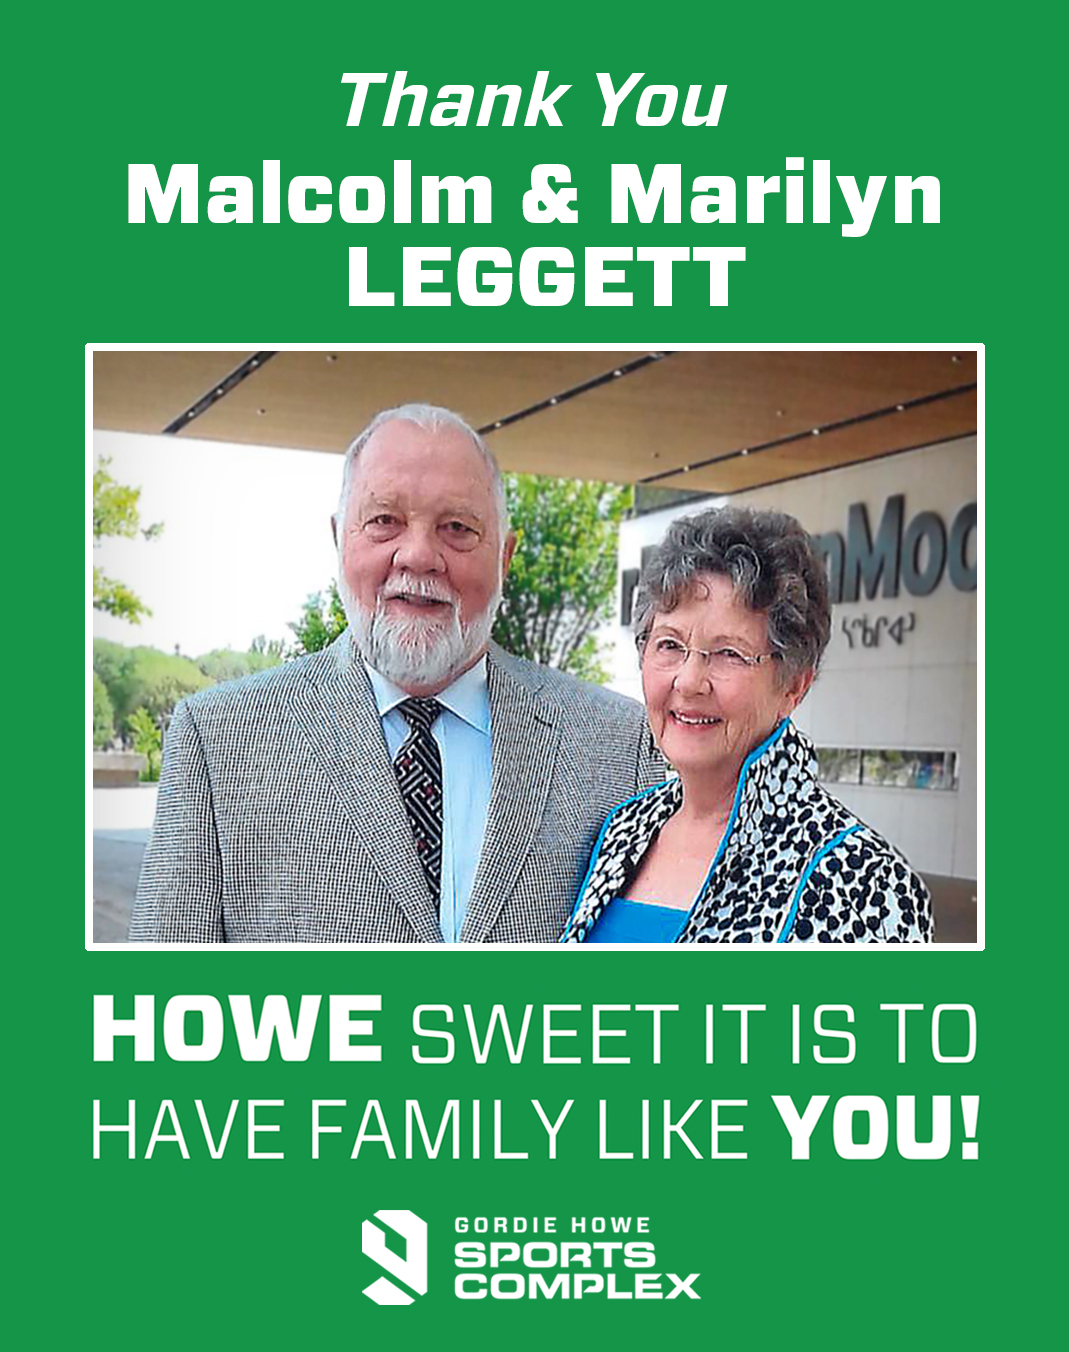 Thank you Malcolm and Marilyn Leggett